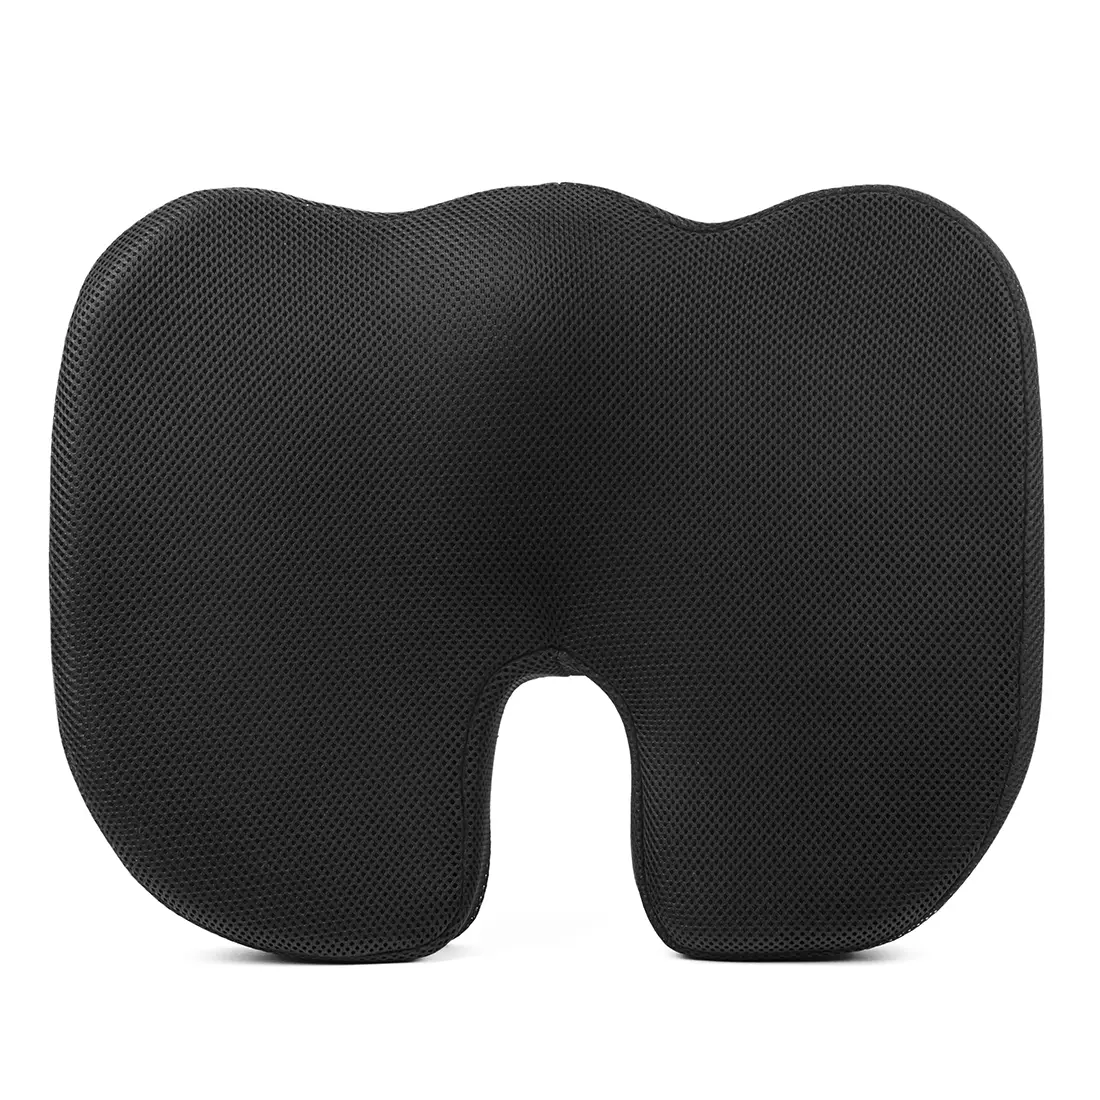 Ergonomiczna poduszka ortopedyczna do siedzenia przy komputerze na fotel  czarna